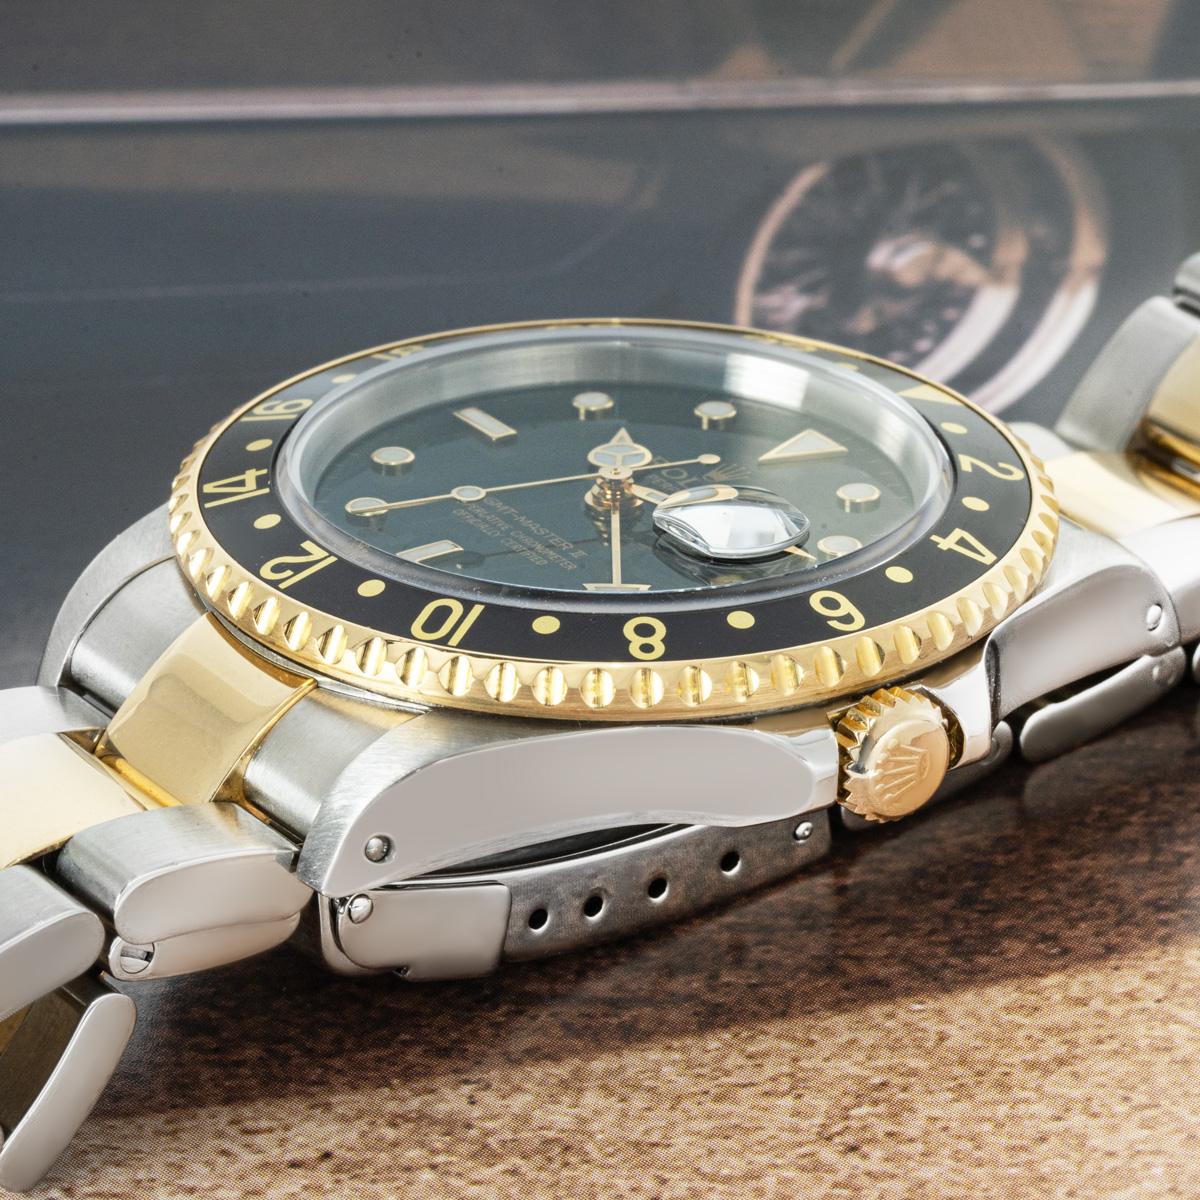 Une GMT-Master II en acier inoxydable et en or jaune 18 carats de Rolex. Elle est dotée d'un cadran noir avec index appliqués, d'un guichet de date et d'une lunette tournante bidirectionnelle en or jaune 18 carats avec insert noir.

Dotée d'un verre